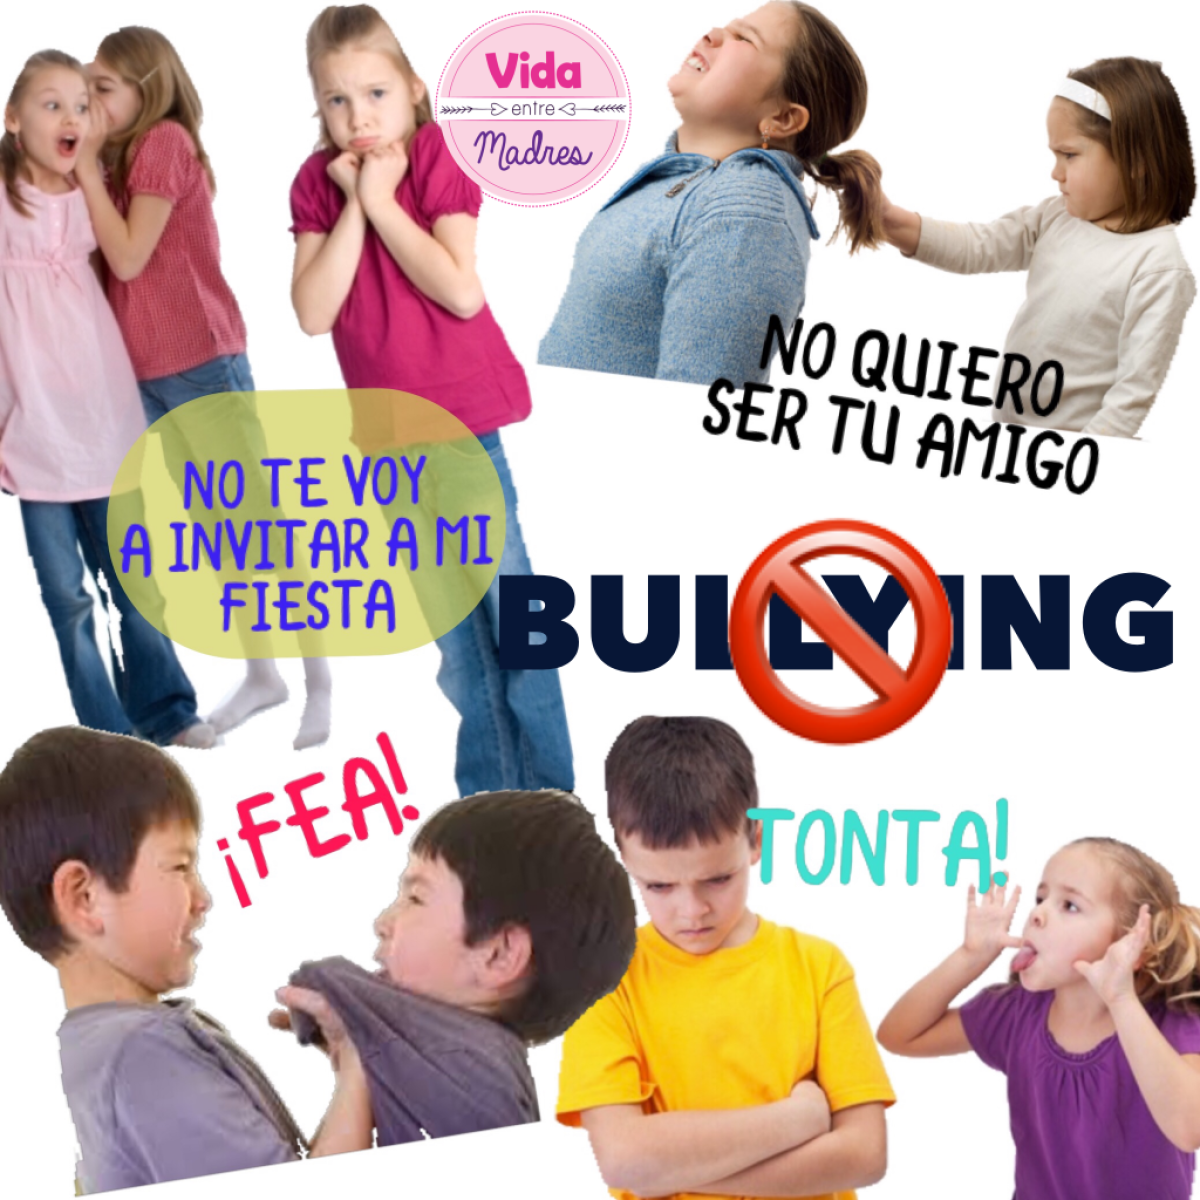 10 Preguntas Sobre Acoso Escolar O Bullying - Vrogue